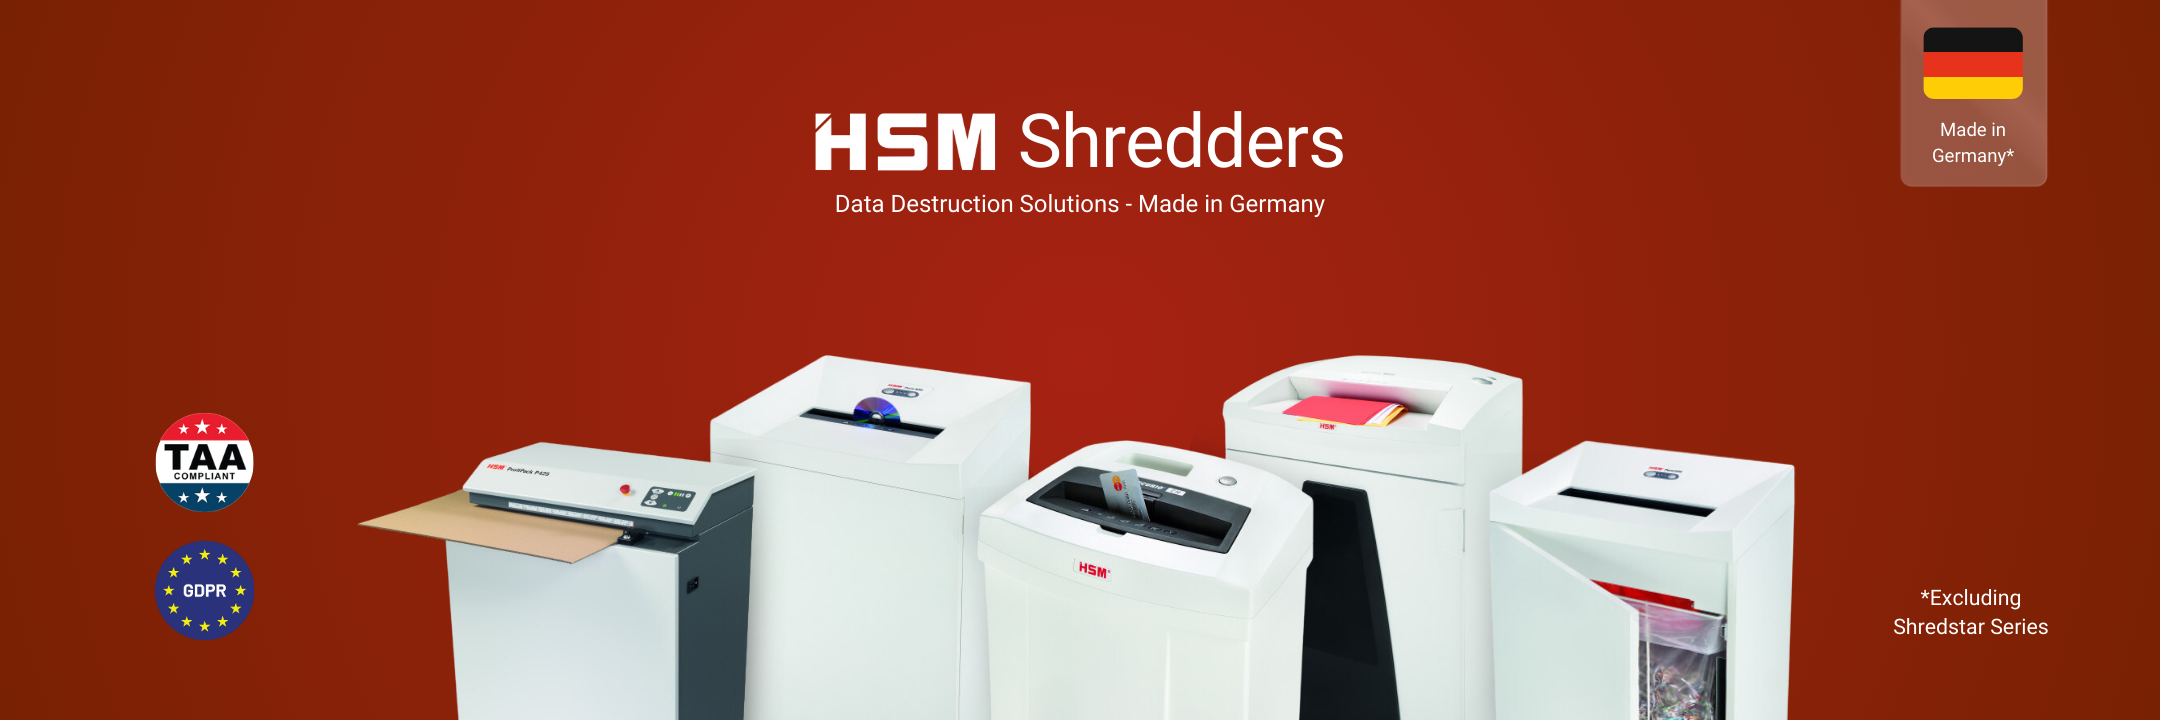 HSM Shredder Box Insert for B32 Series Shredders